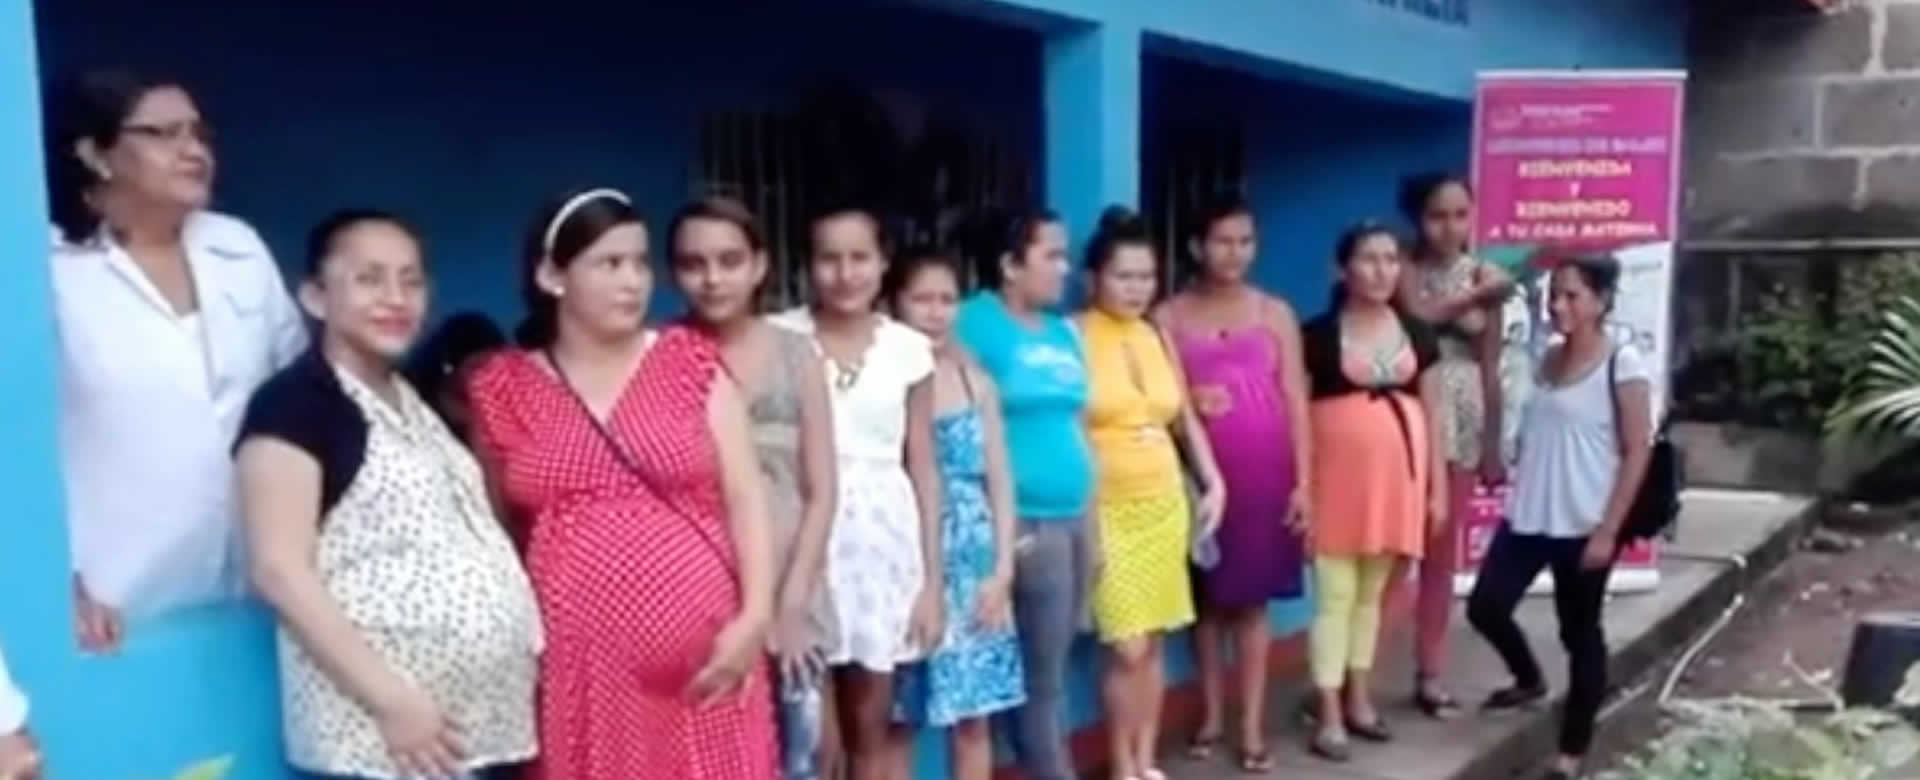 La casa materna "Sagrada Familia" de Juigalpa reapertura sus servicios de atención